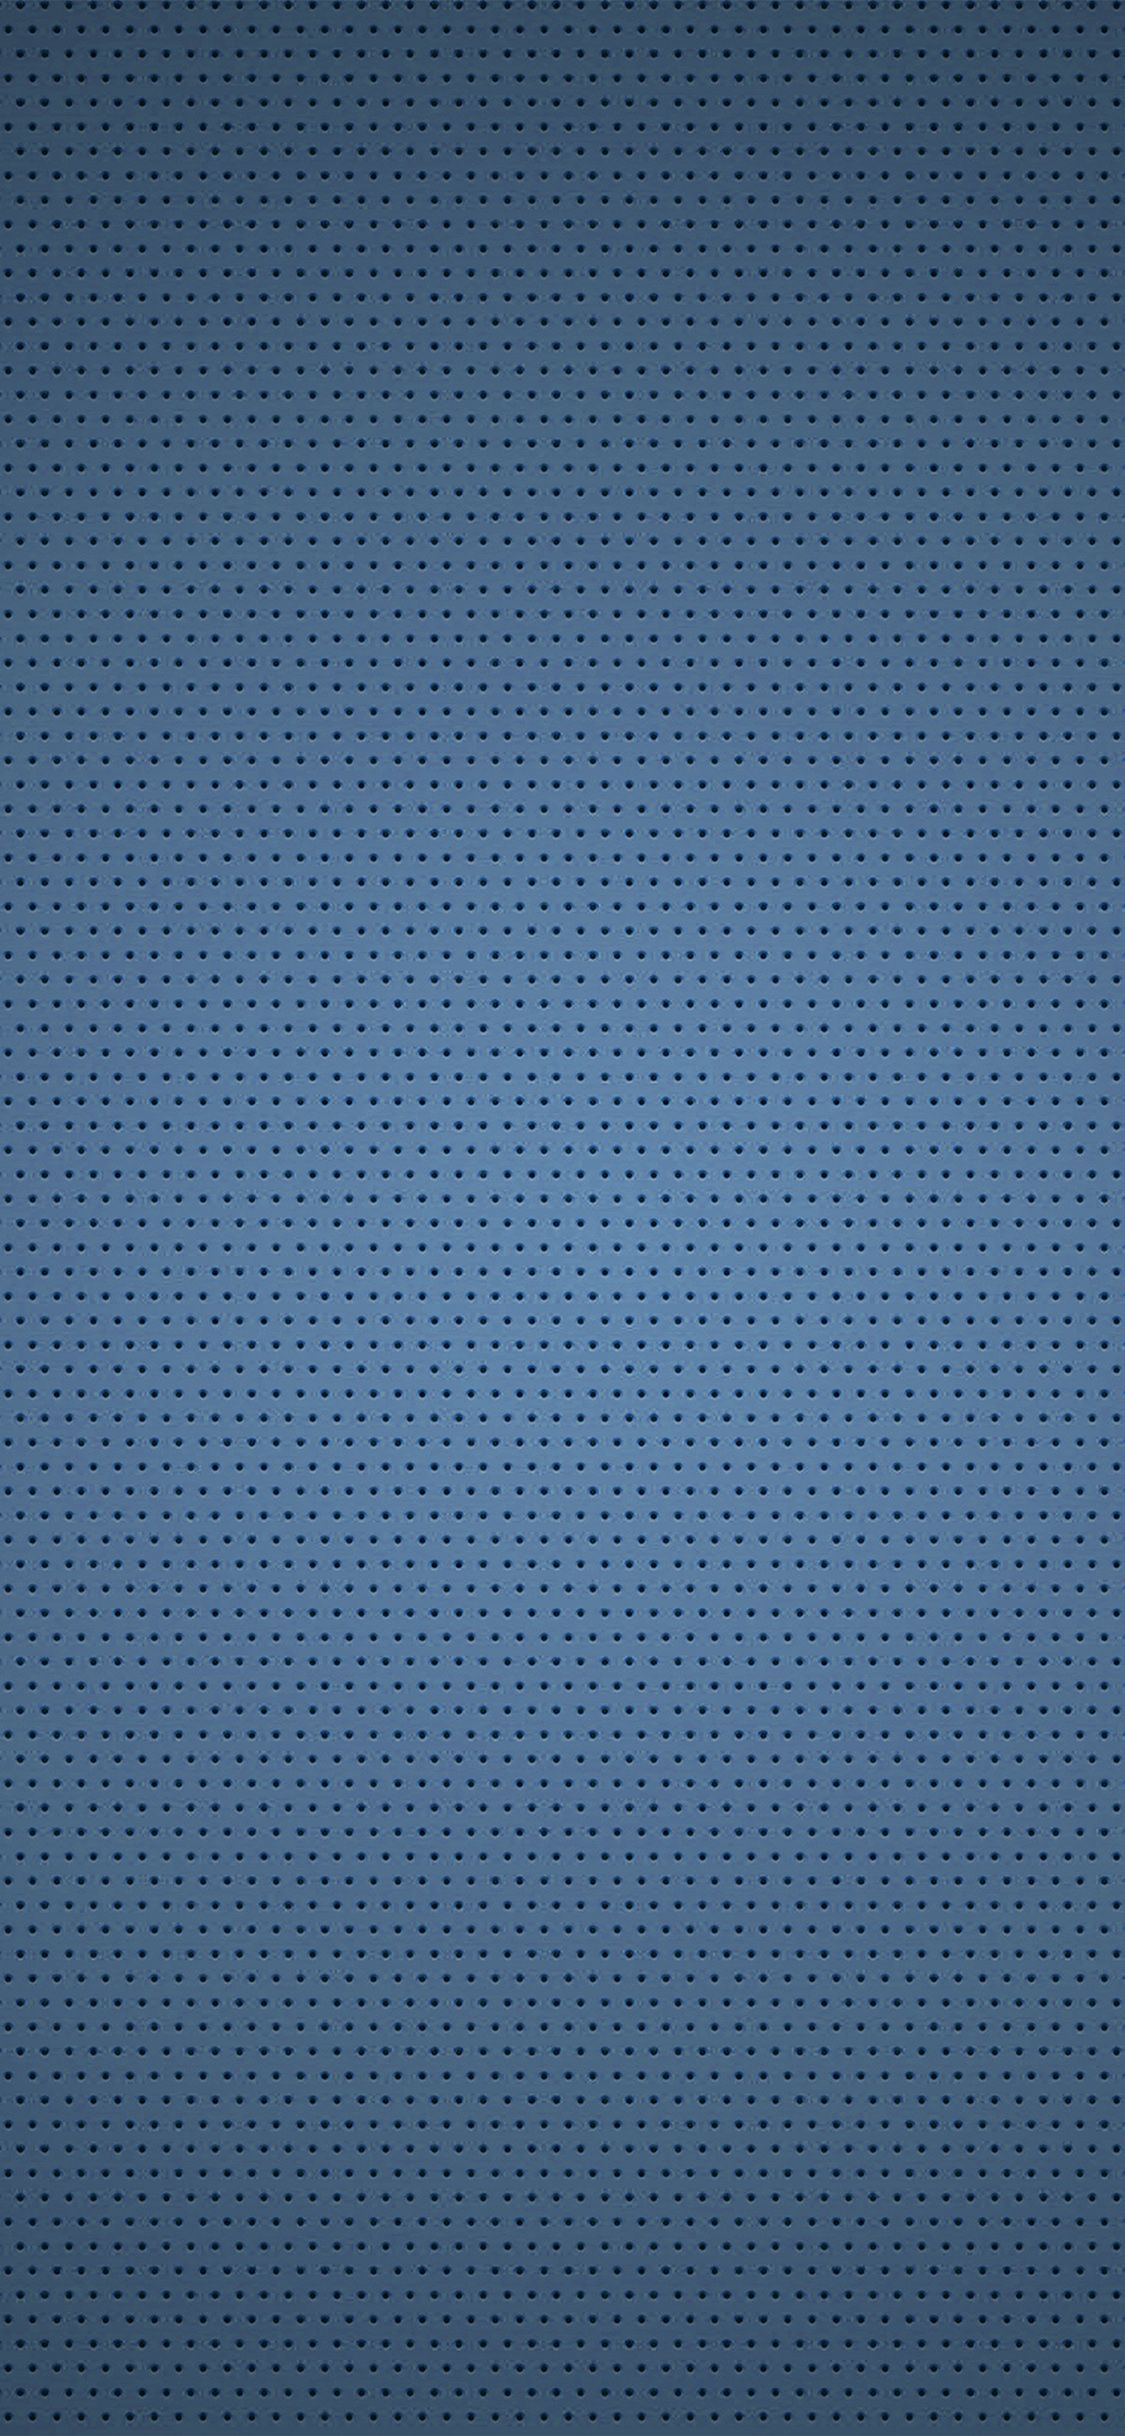 iPhone X wallpaper. dot blue texture pattern